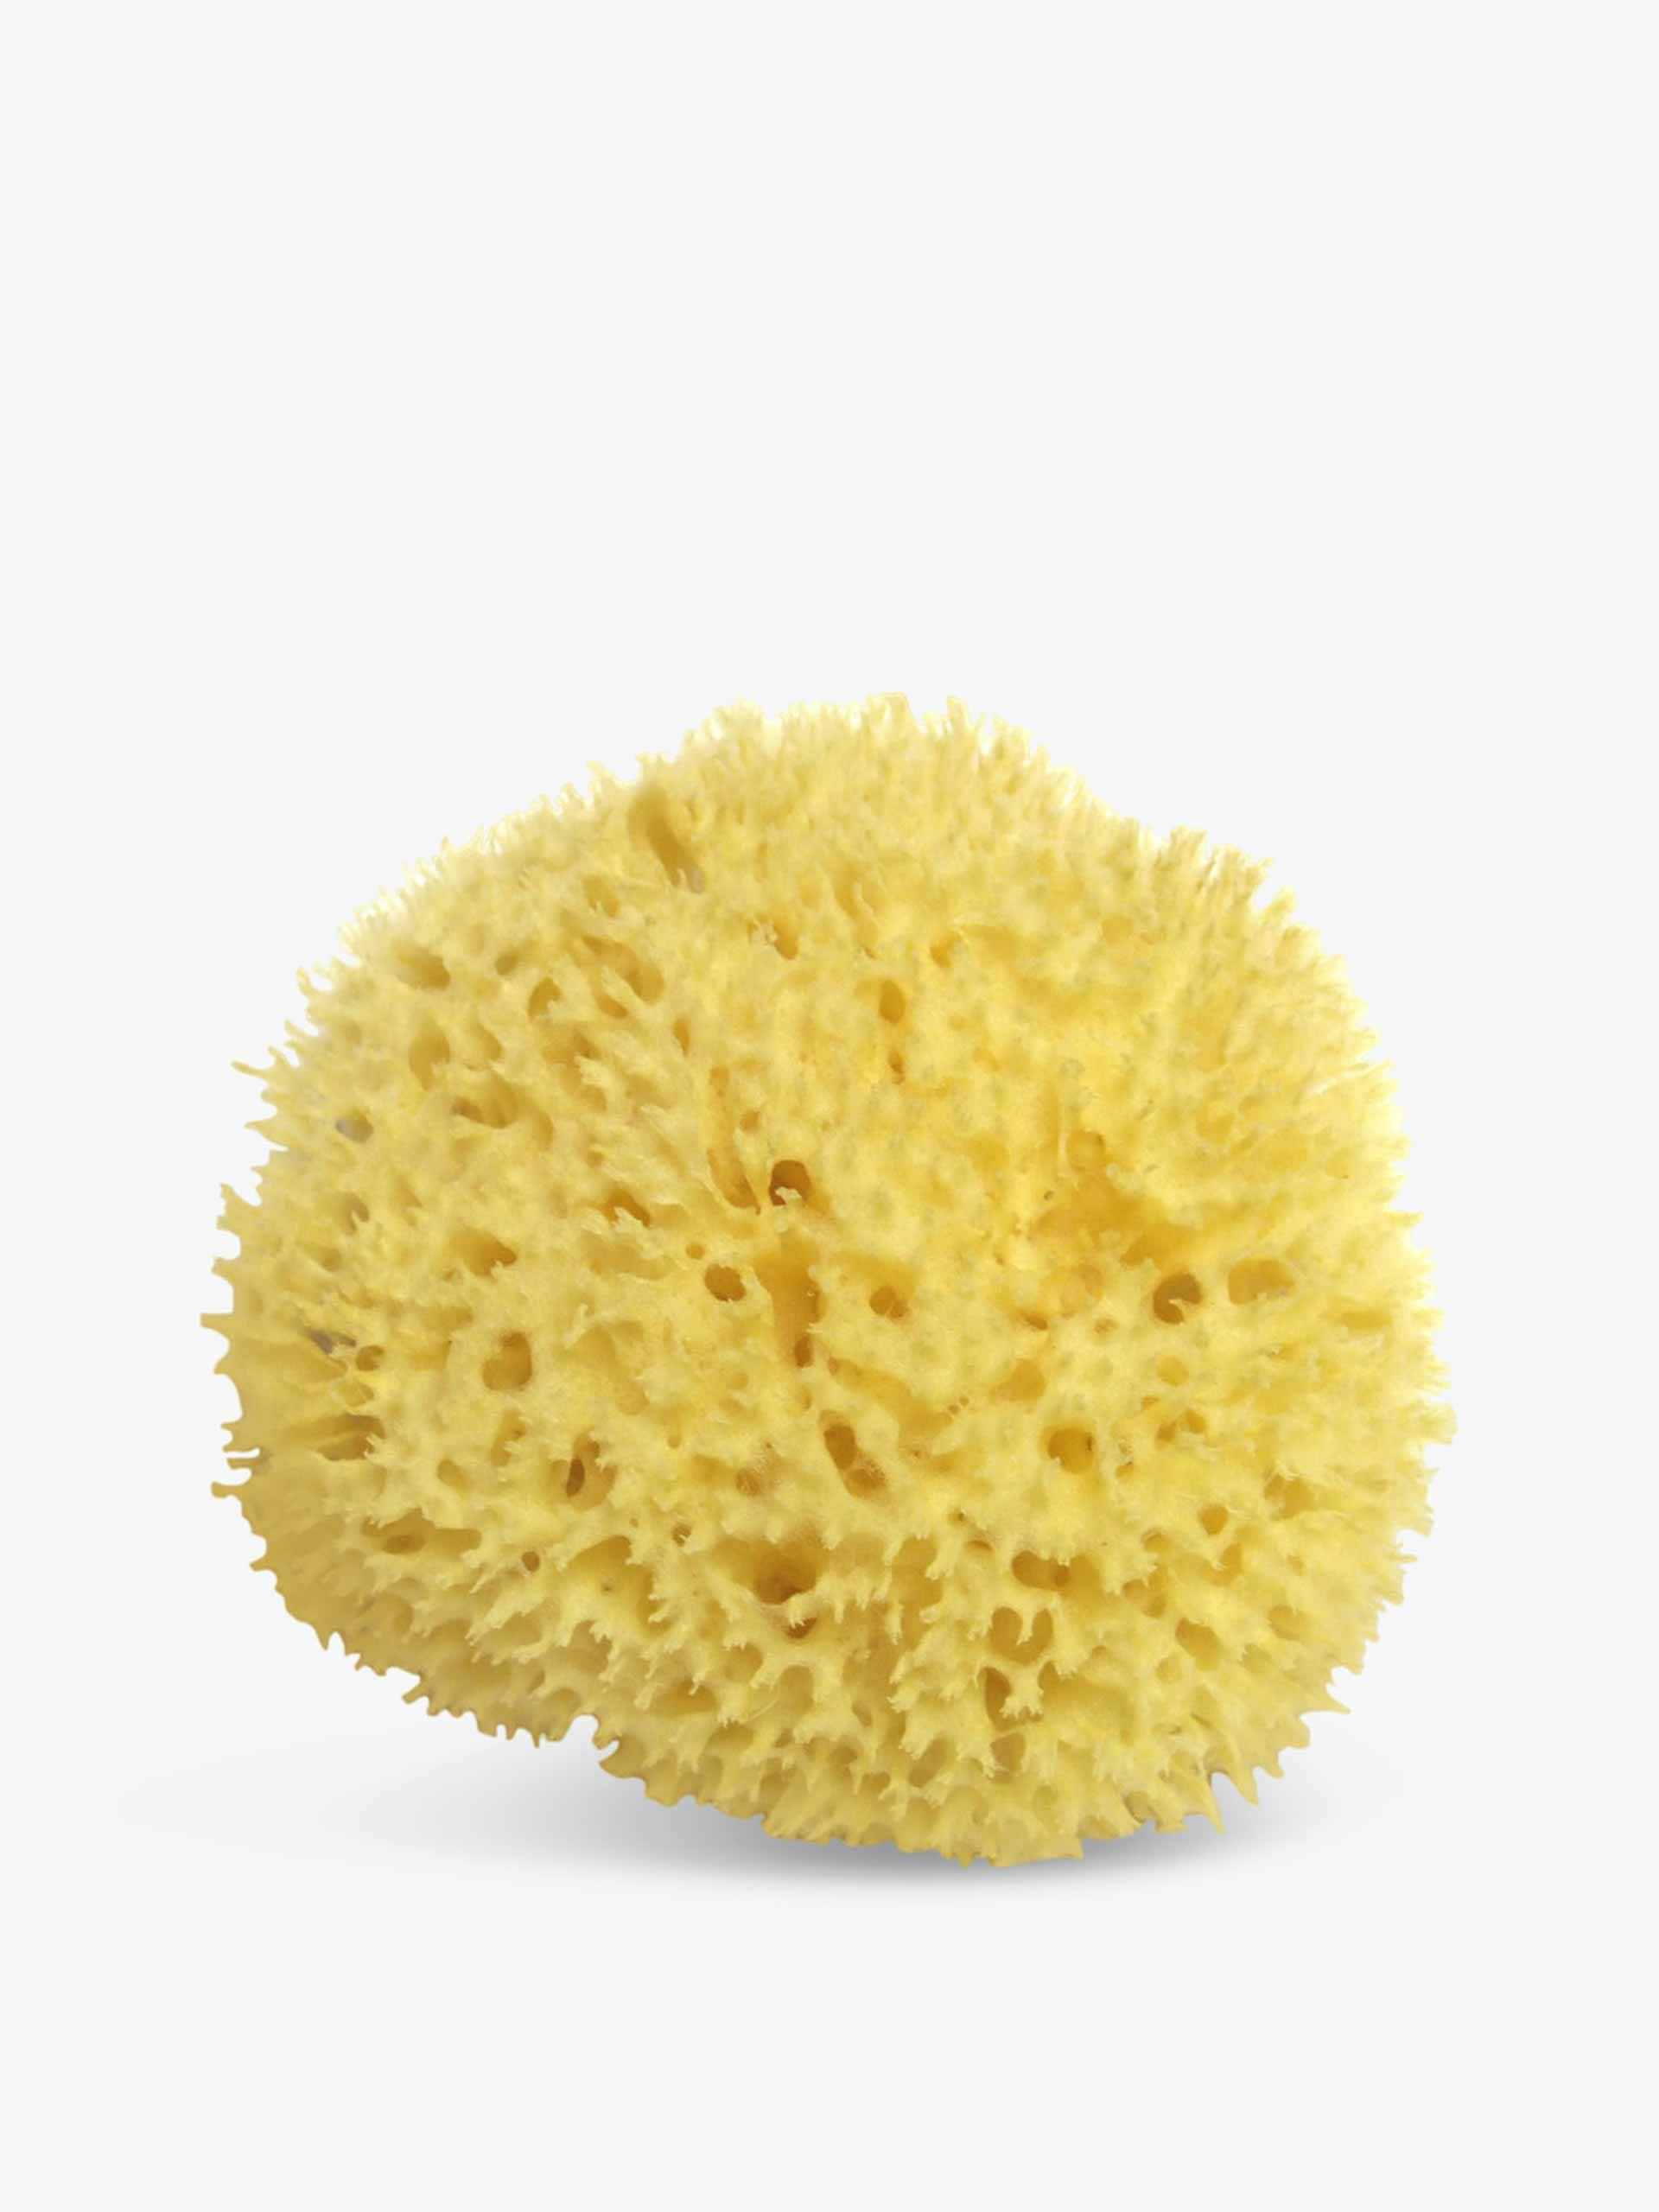 Sea sponge